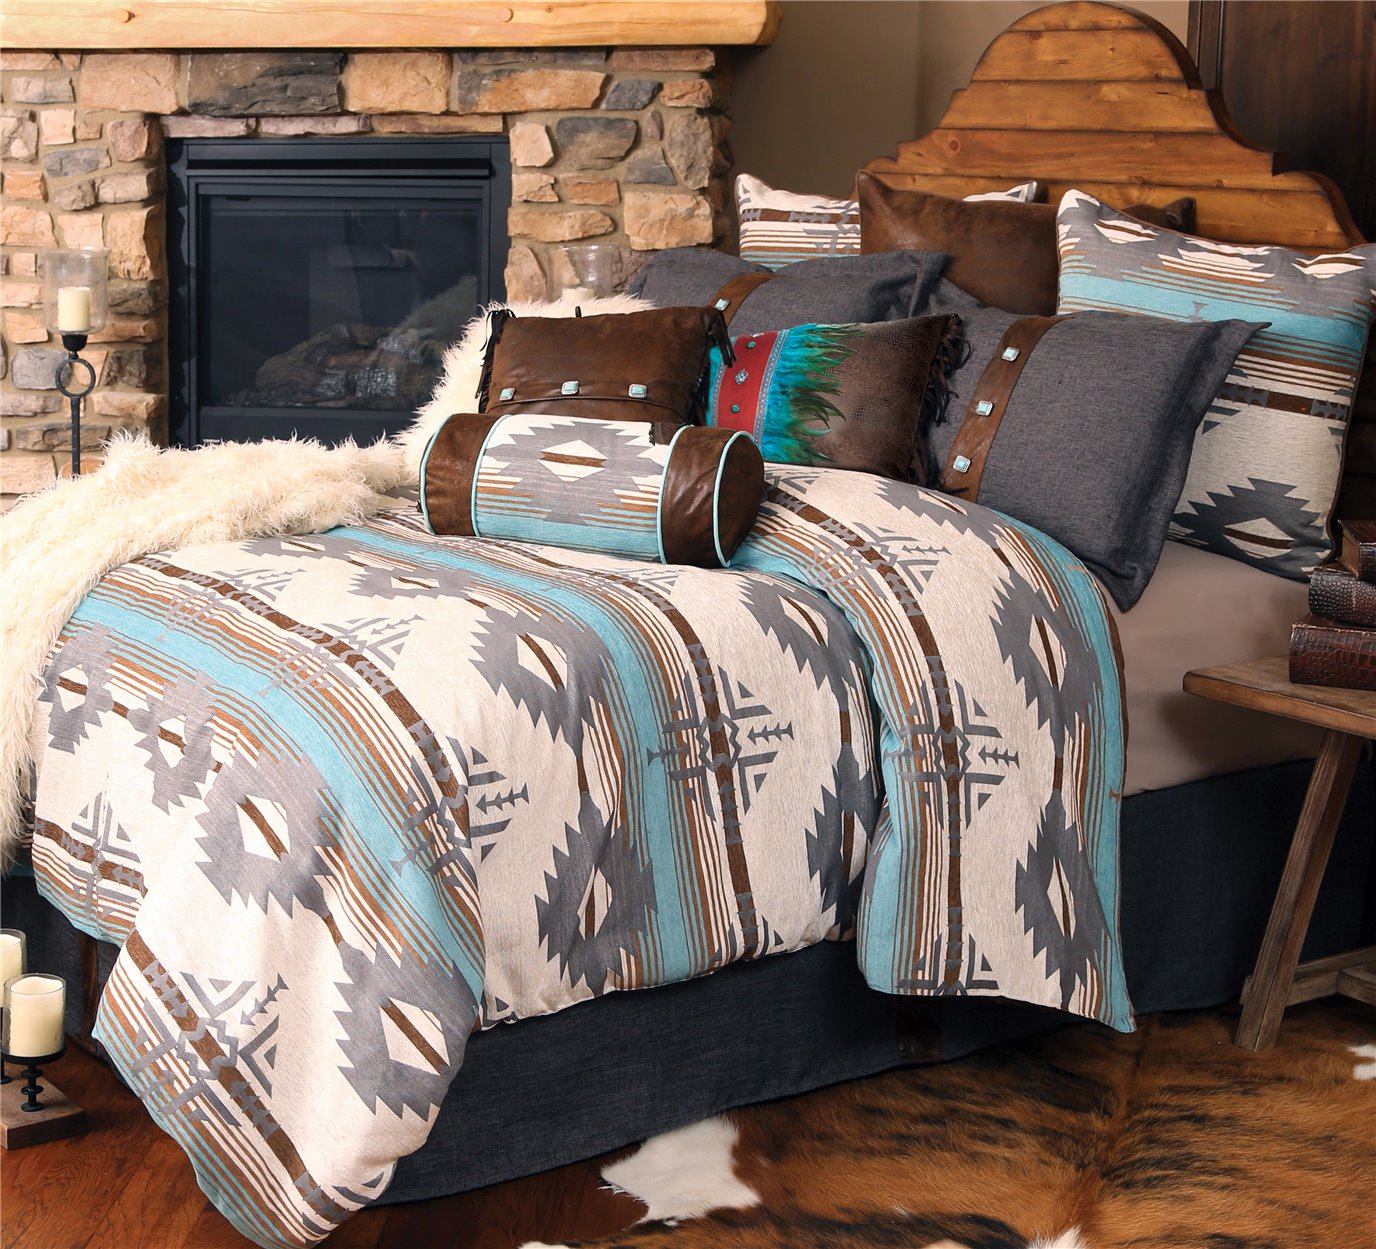 Carstens Badlands Southwestern 5-Piece Comforter Set, King